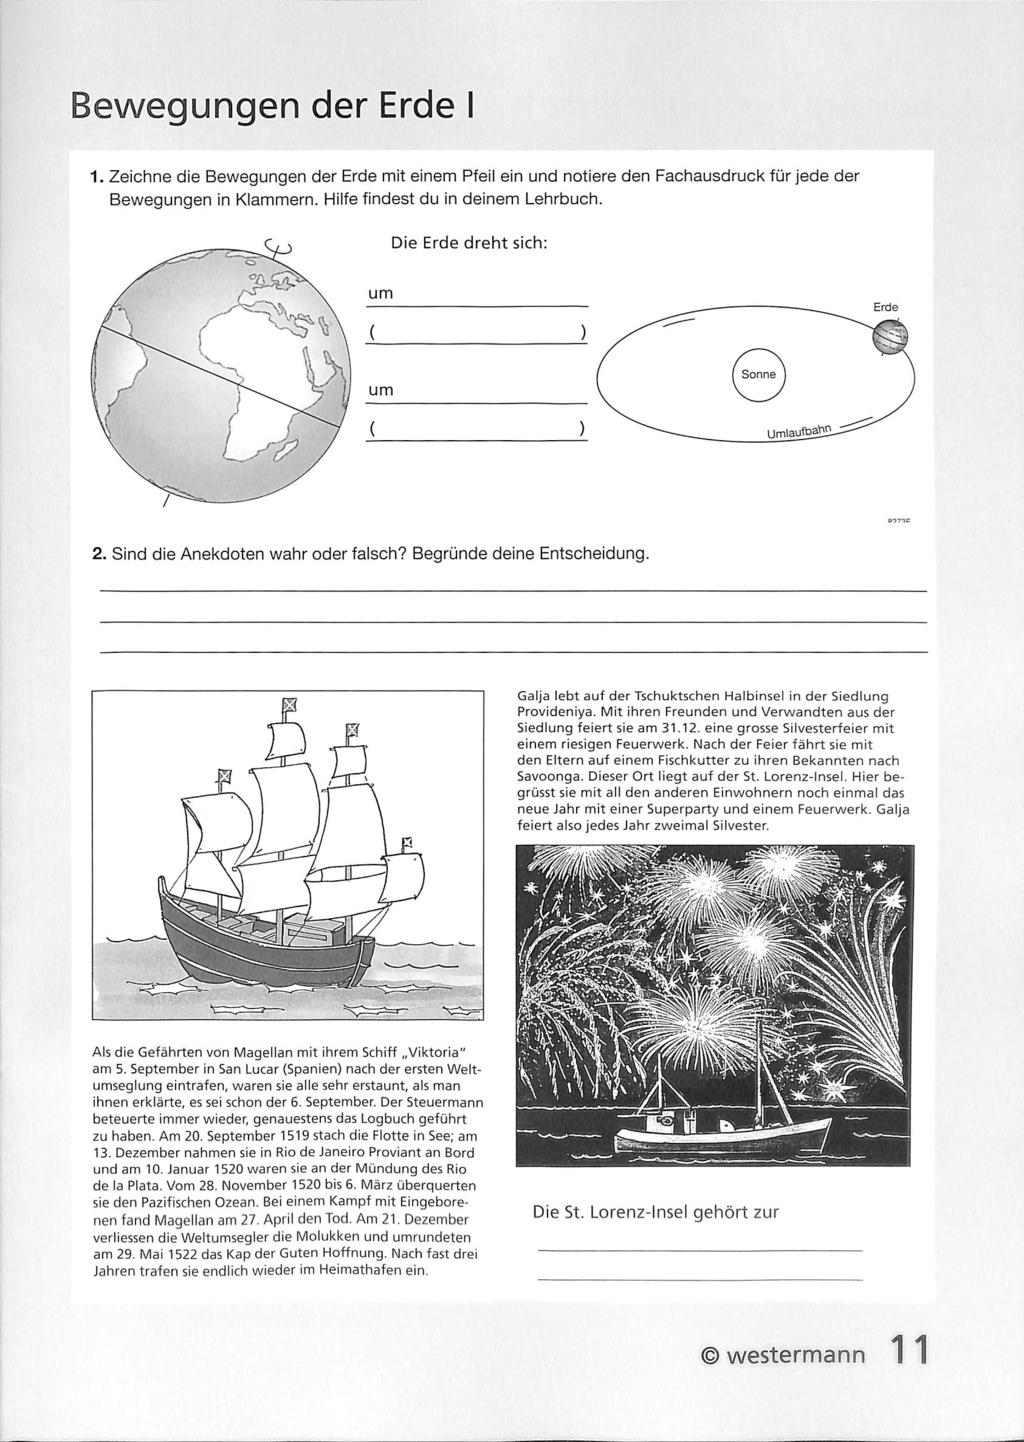 Bewegungen der Erde I 1. Zeichne die Bewegungen der Erde mit einem Pfeil ein und notiere den Fachausdruck für jede der Bewegungen in Klammern. Hilfe findest du in deinem Lehrbuch.